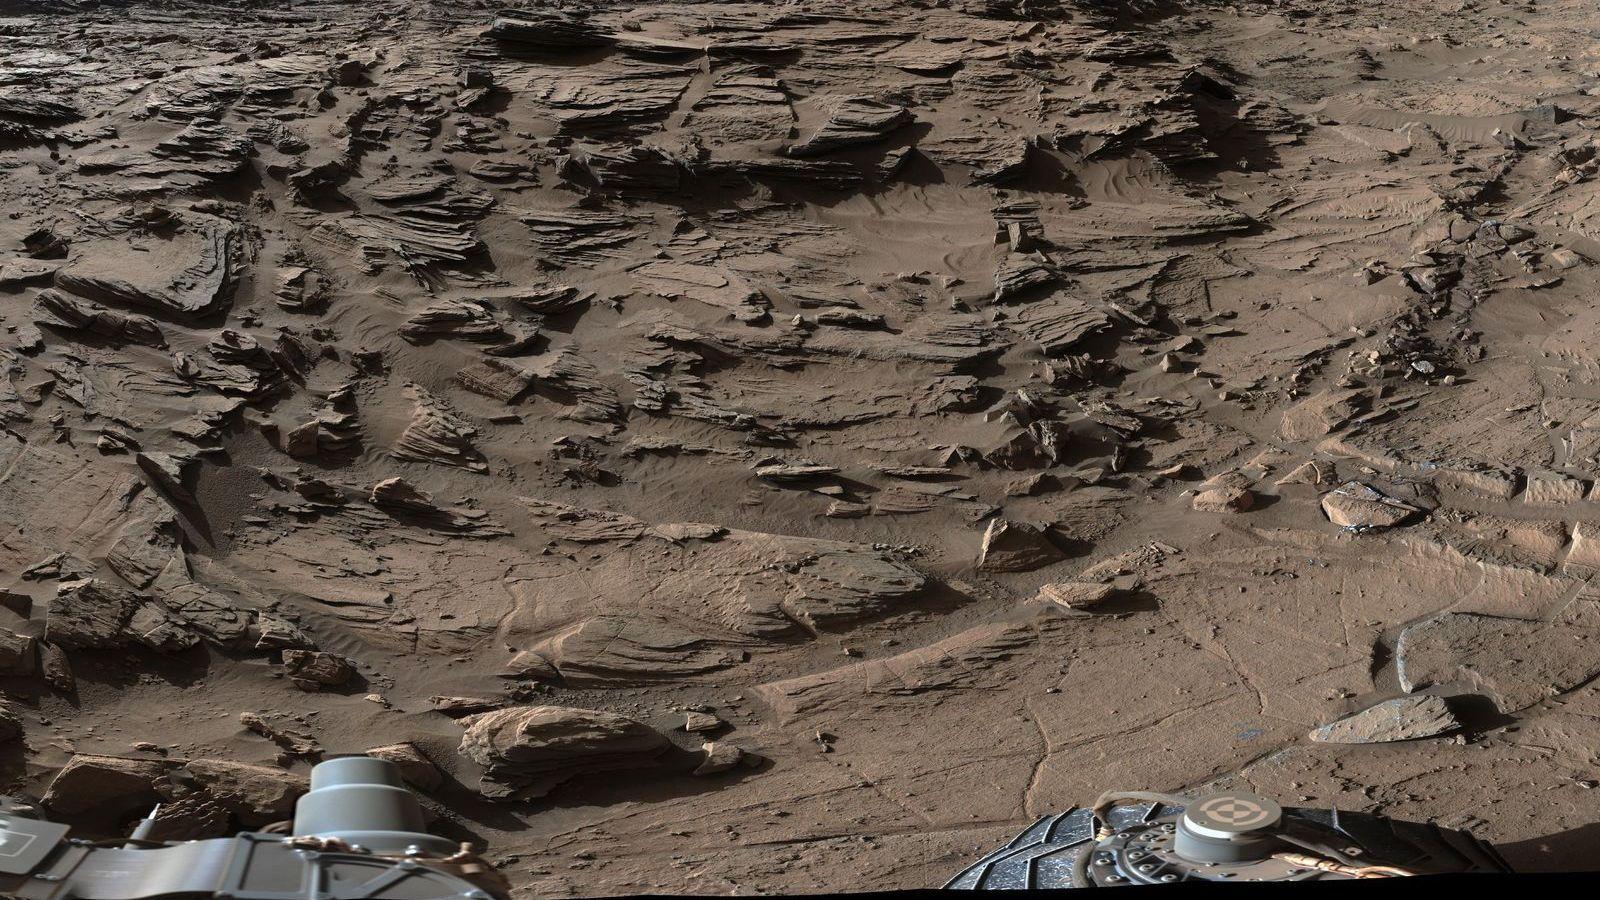 Her er Mars-kjøretøyet i ferd med å krysse sitt vanskeligste terreng hittil